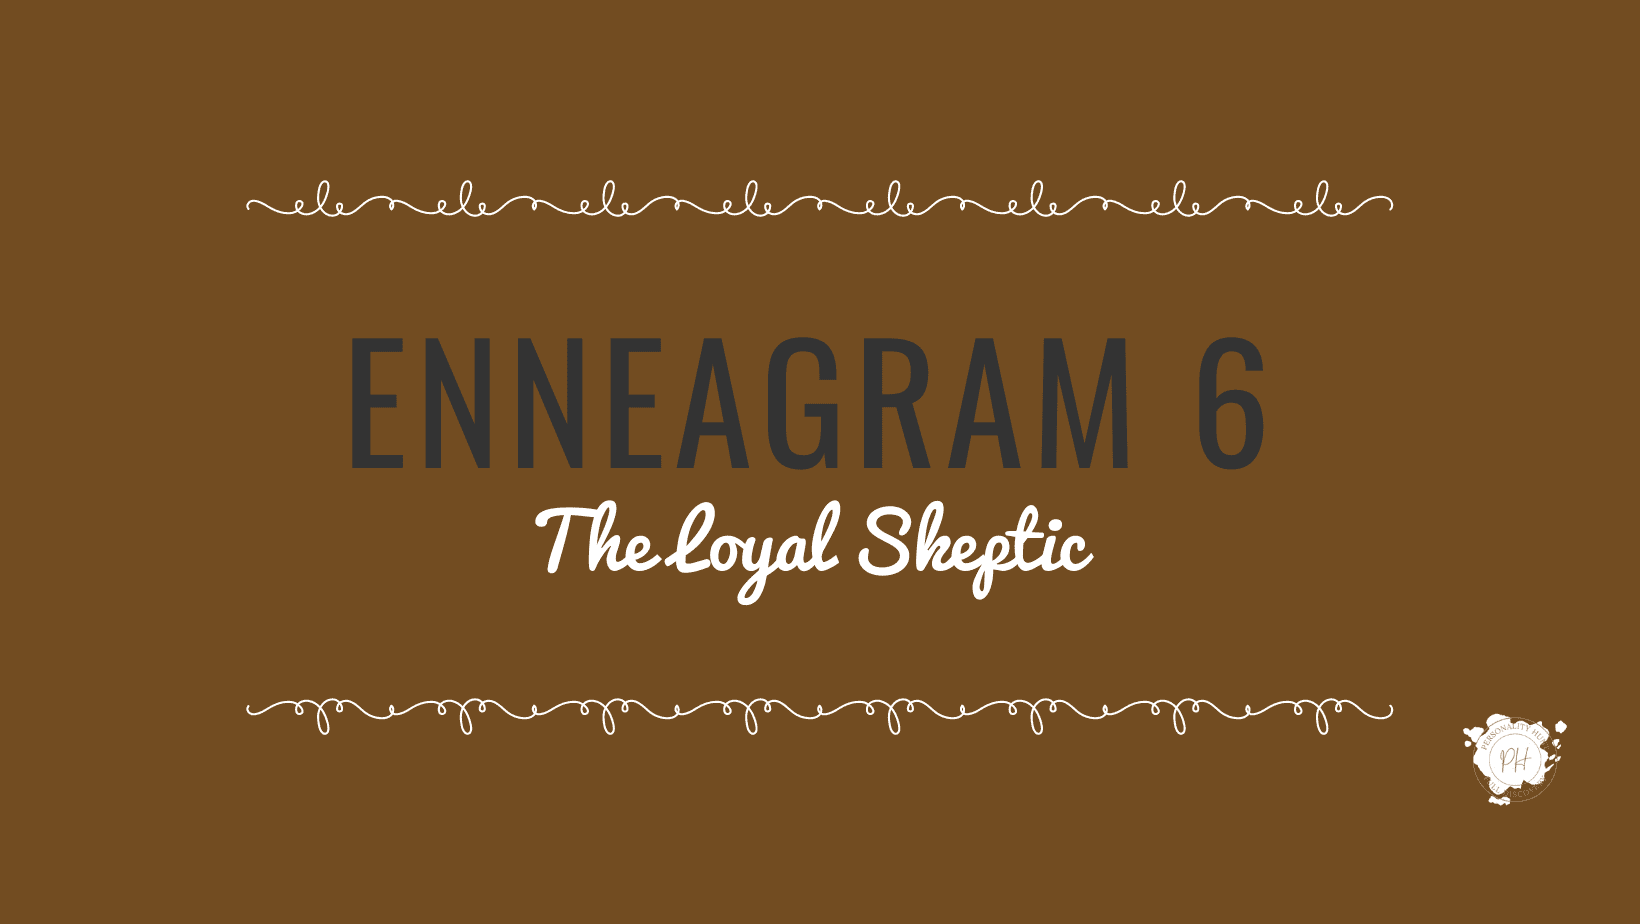 Enneagram Type 6- The Loyal Skeptic